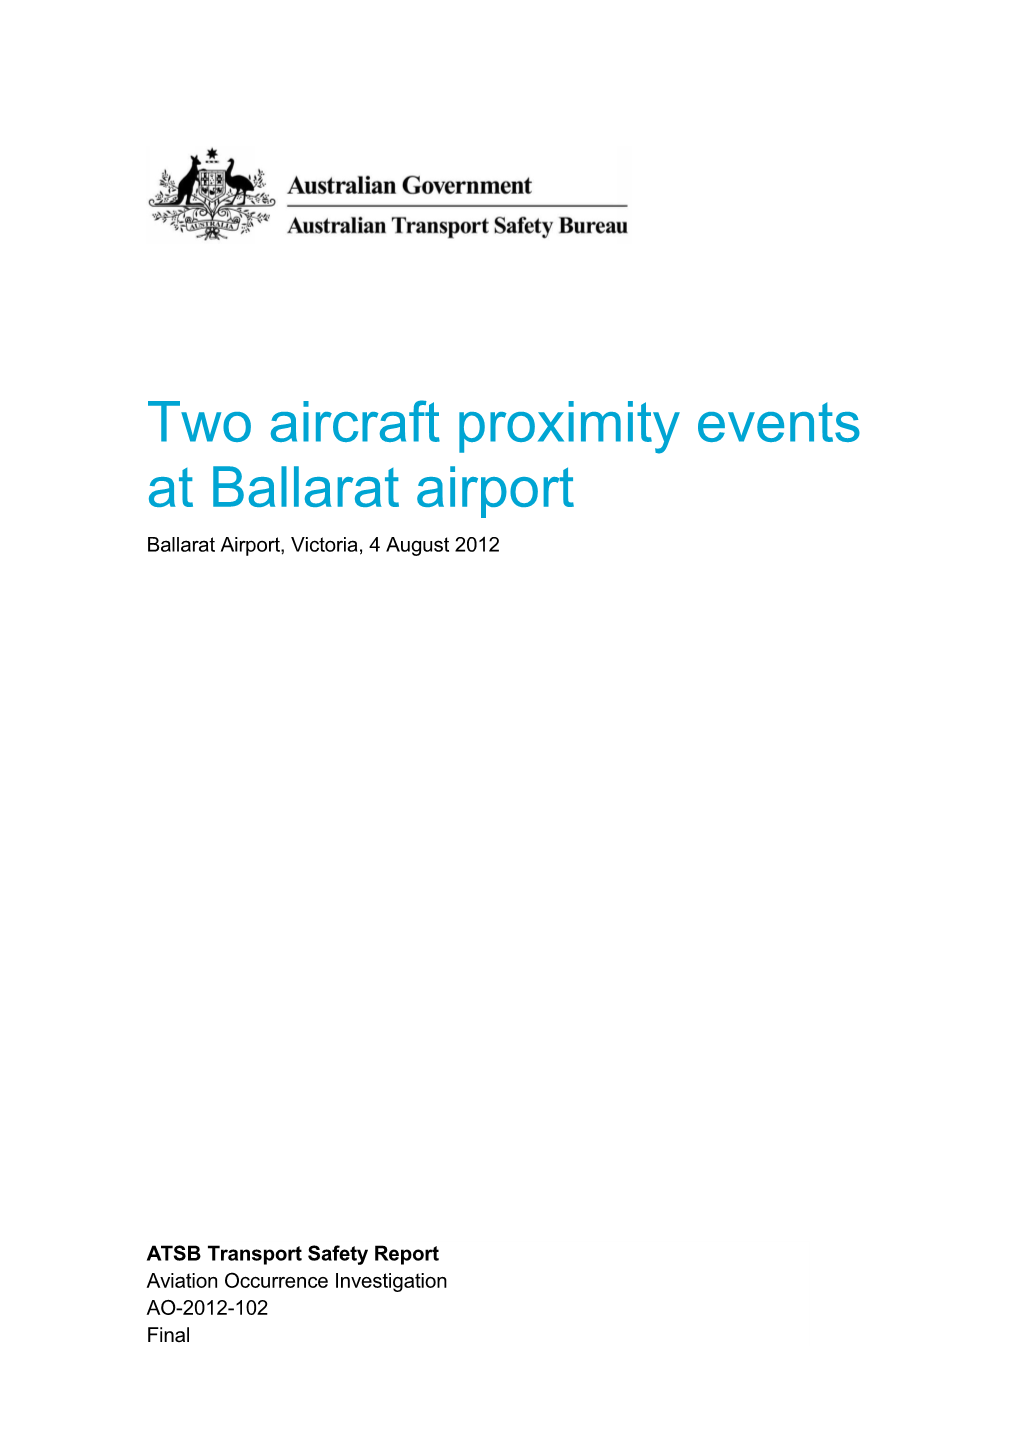 Two Aircraft Proximity Events at Ballarat Airport